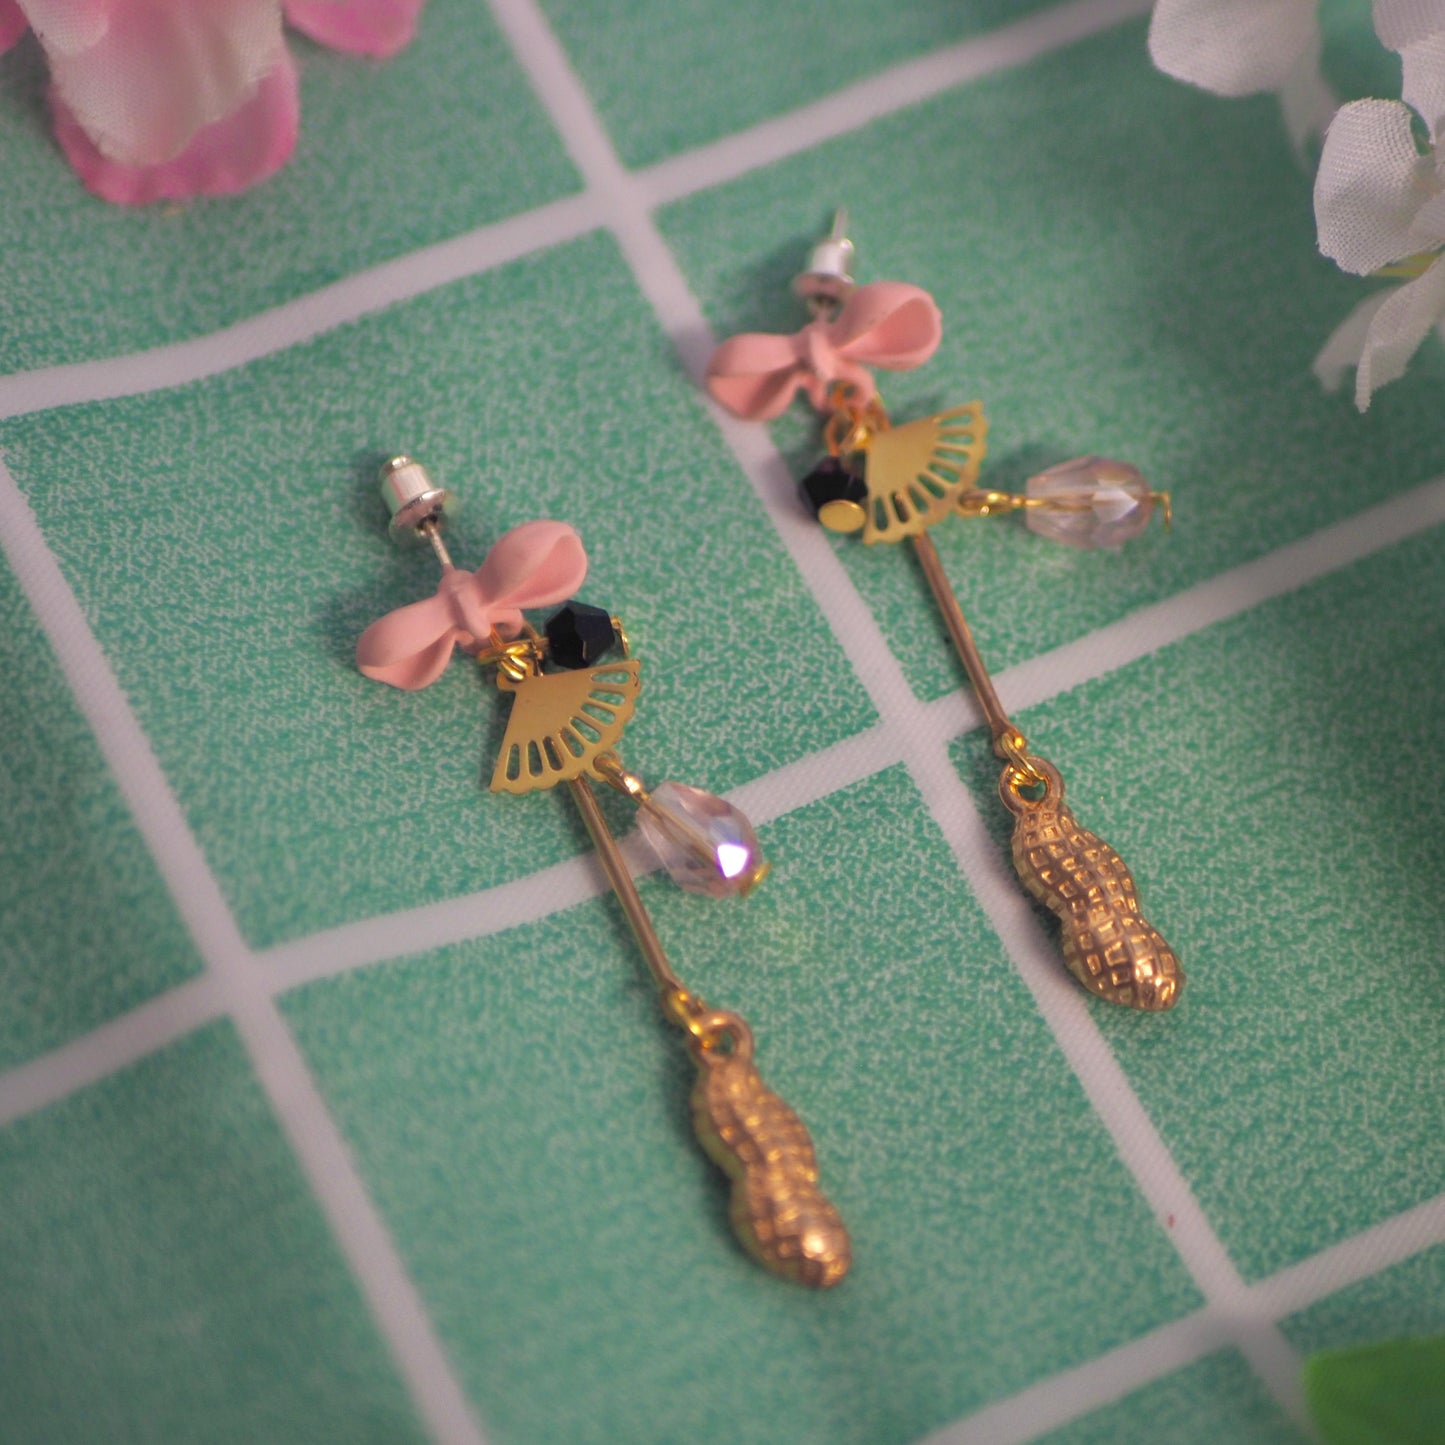 Peanut Lover, SxF anime inspired earrings